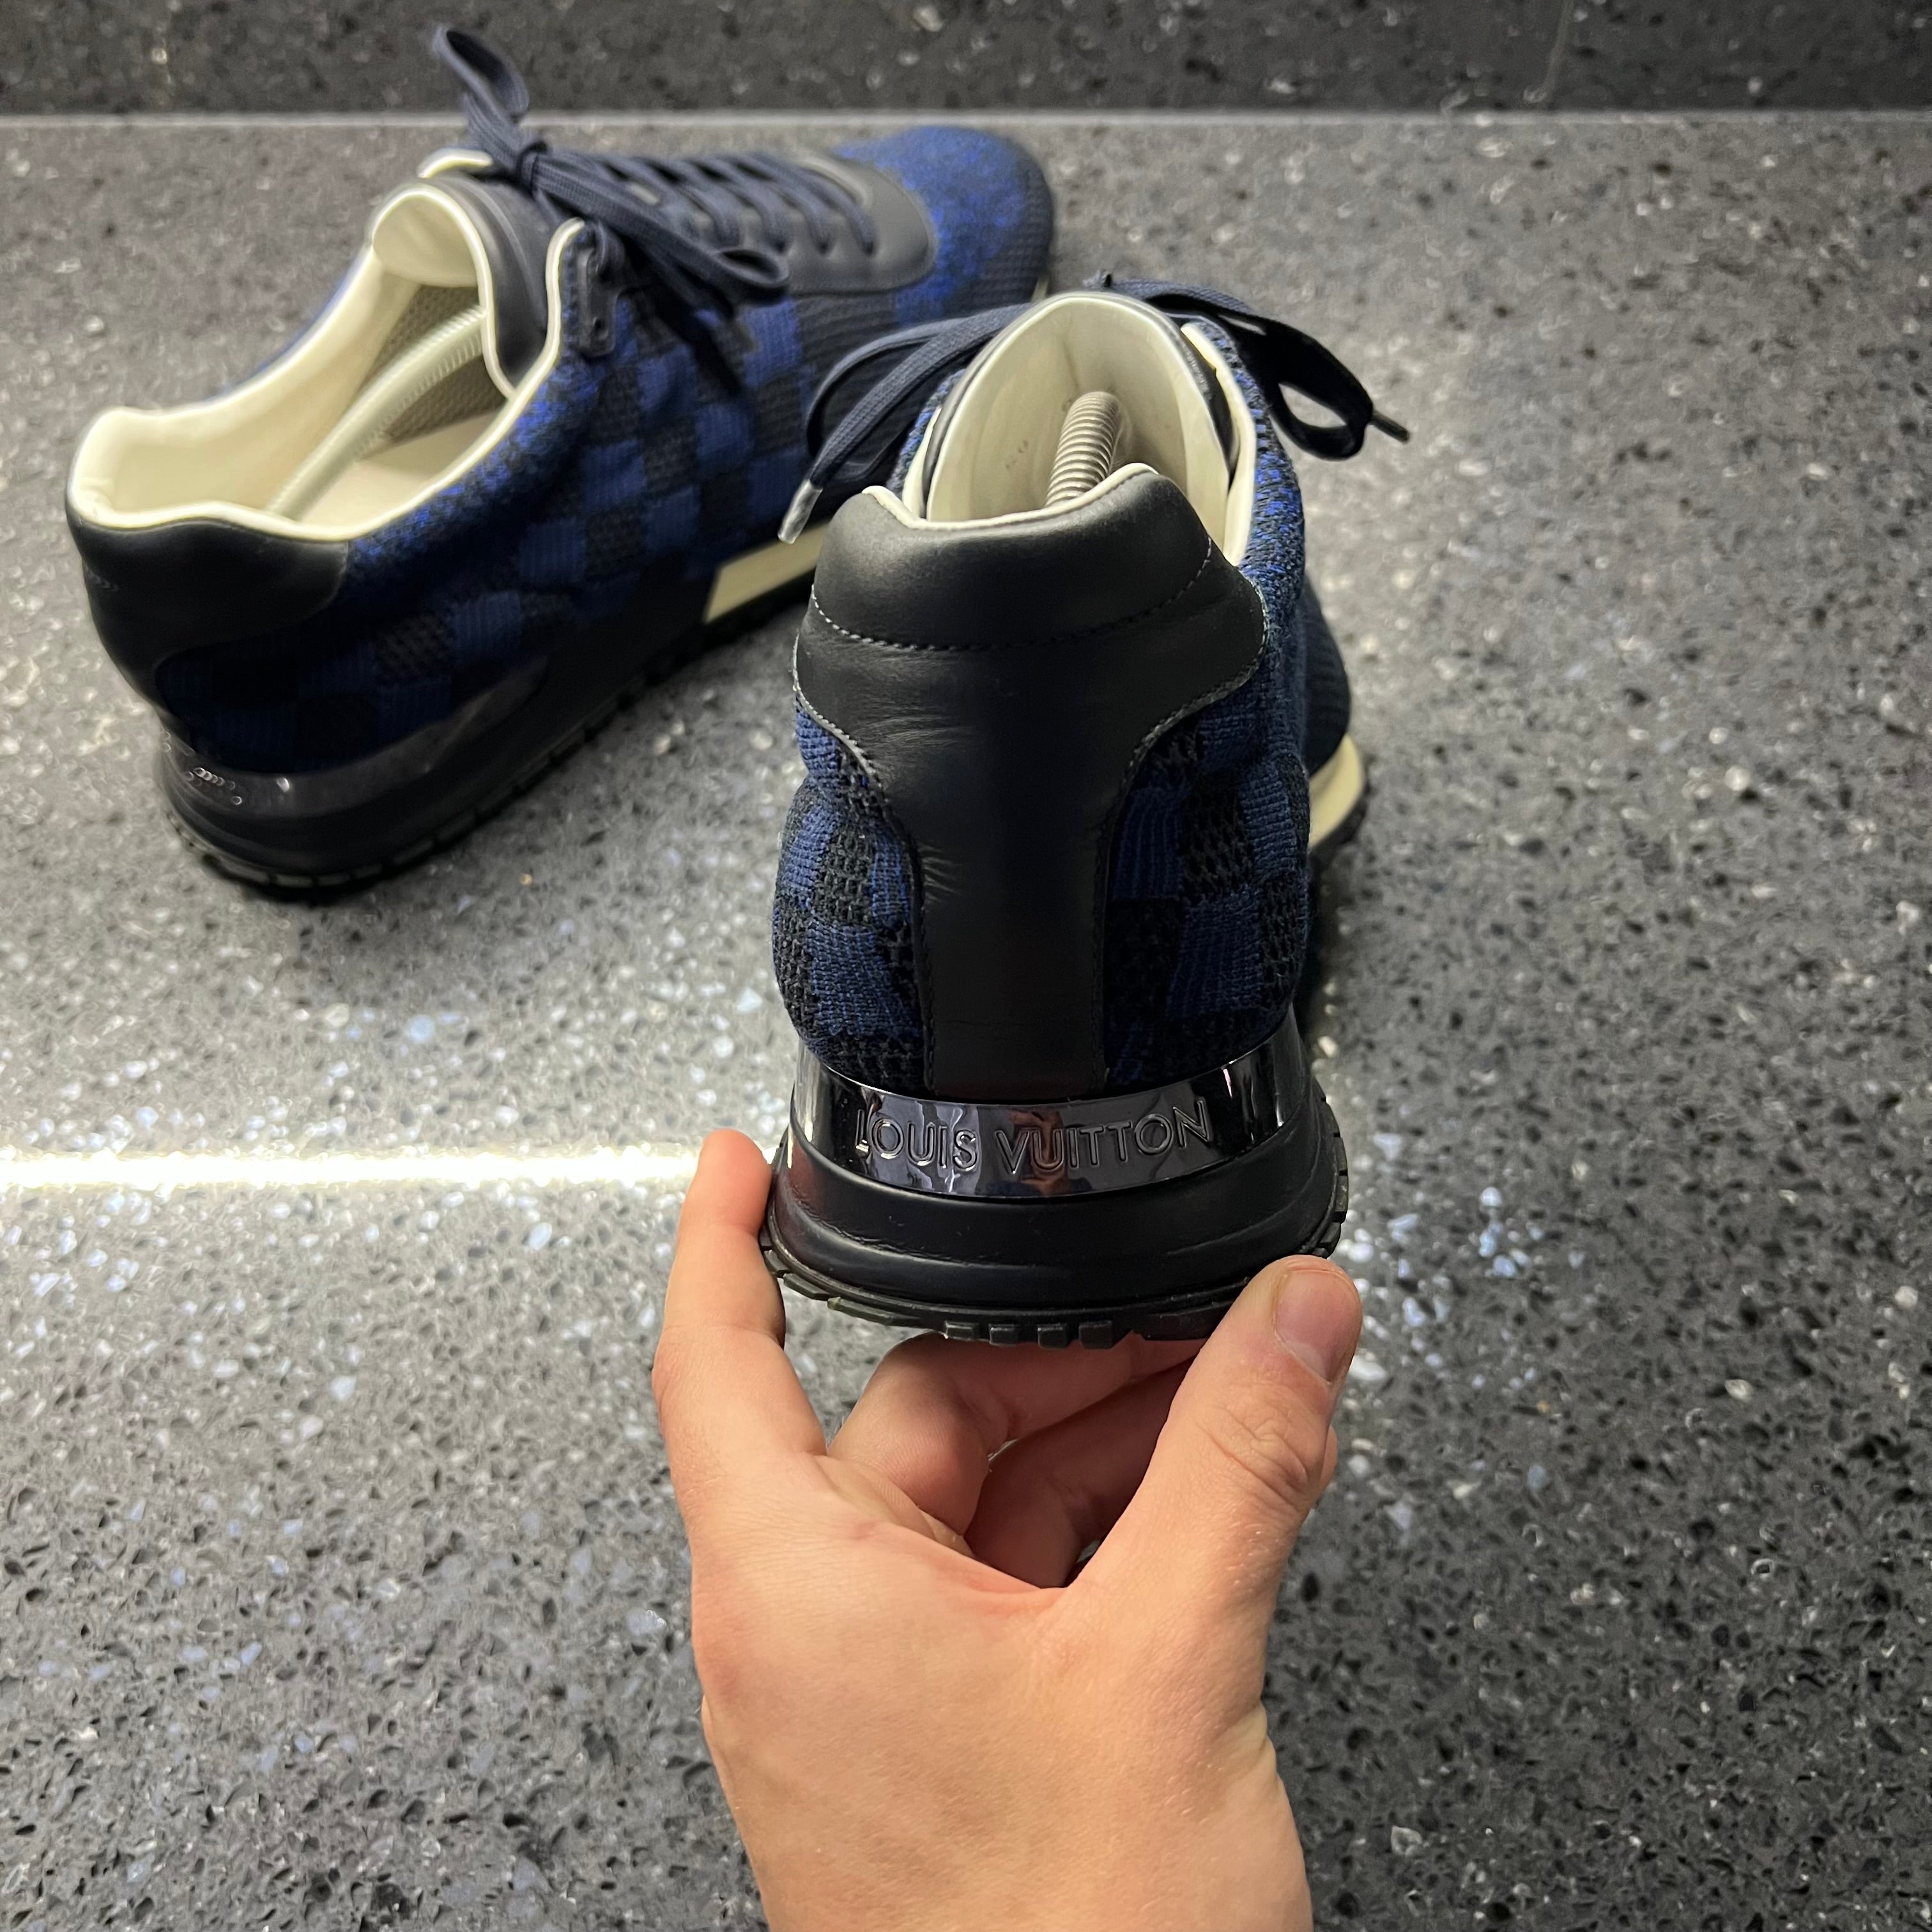 Louis Vuitton Run Away Sneaker, Blue, 11